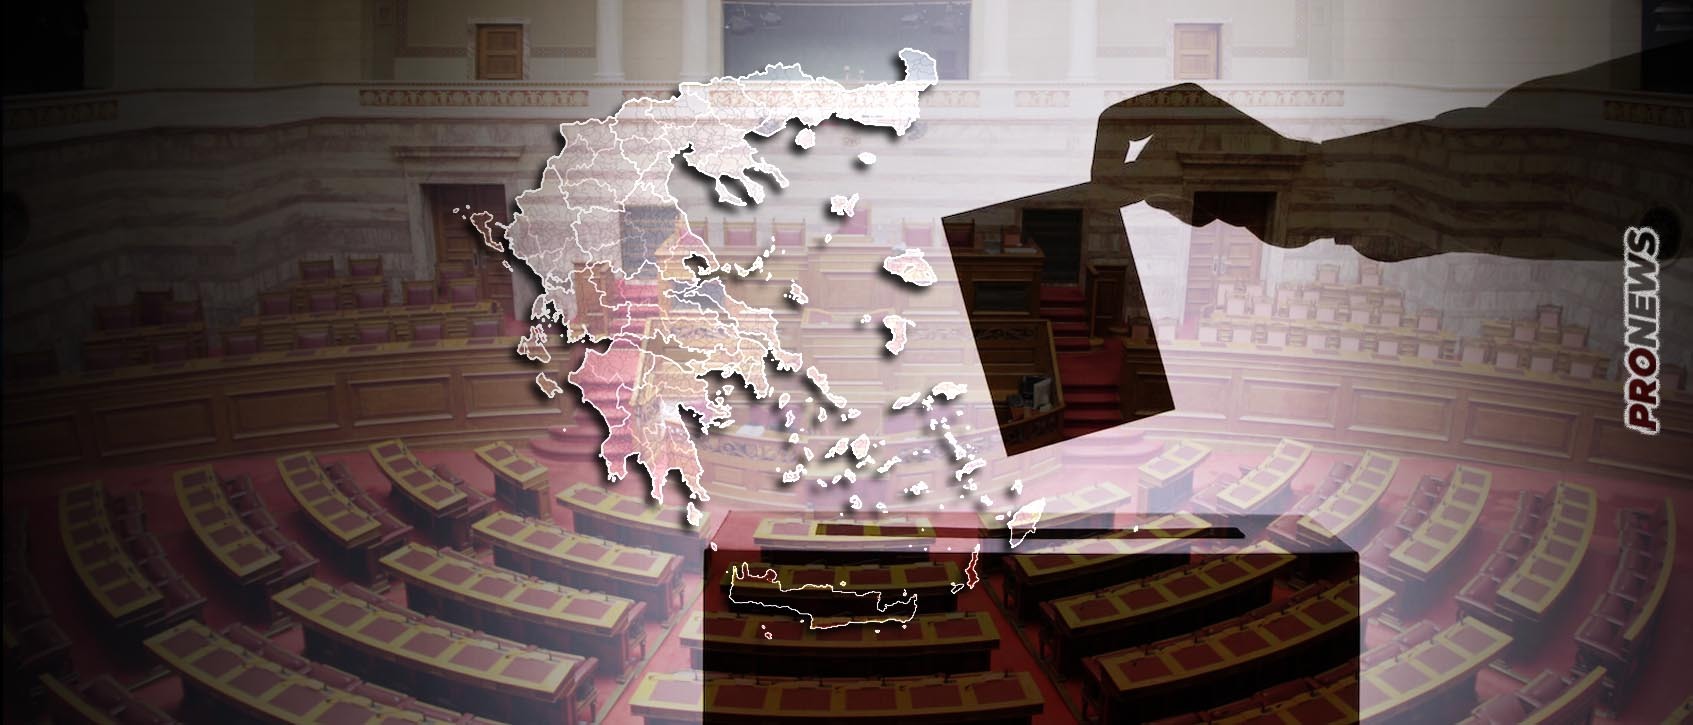 ΝΙΚΗ-Πλεύση Ελευθερίας: Τα «μαξιλάρια φούσκωσαν» και παραλίγο να μπουν στην Βουλή